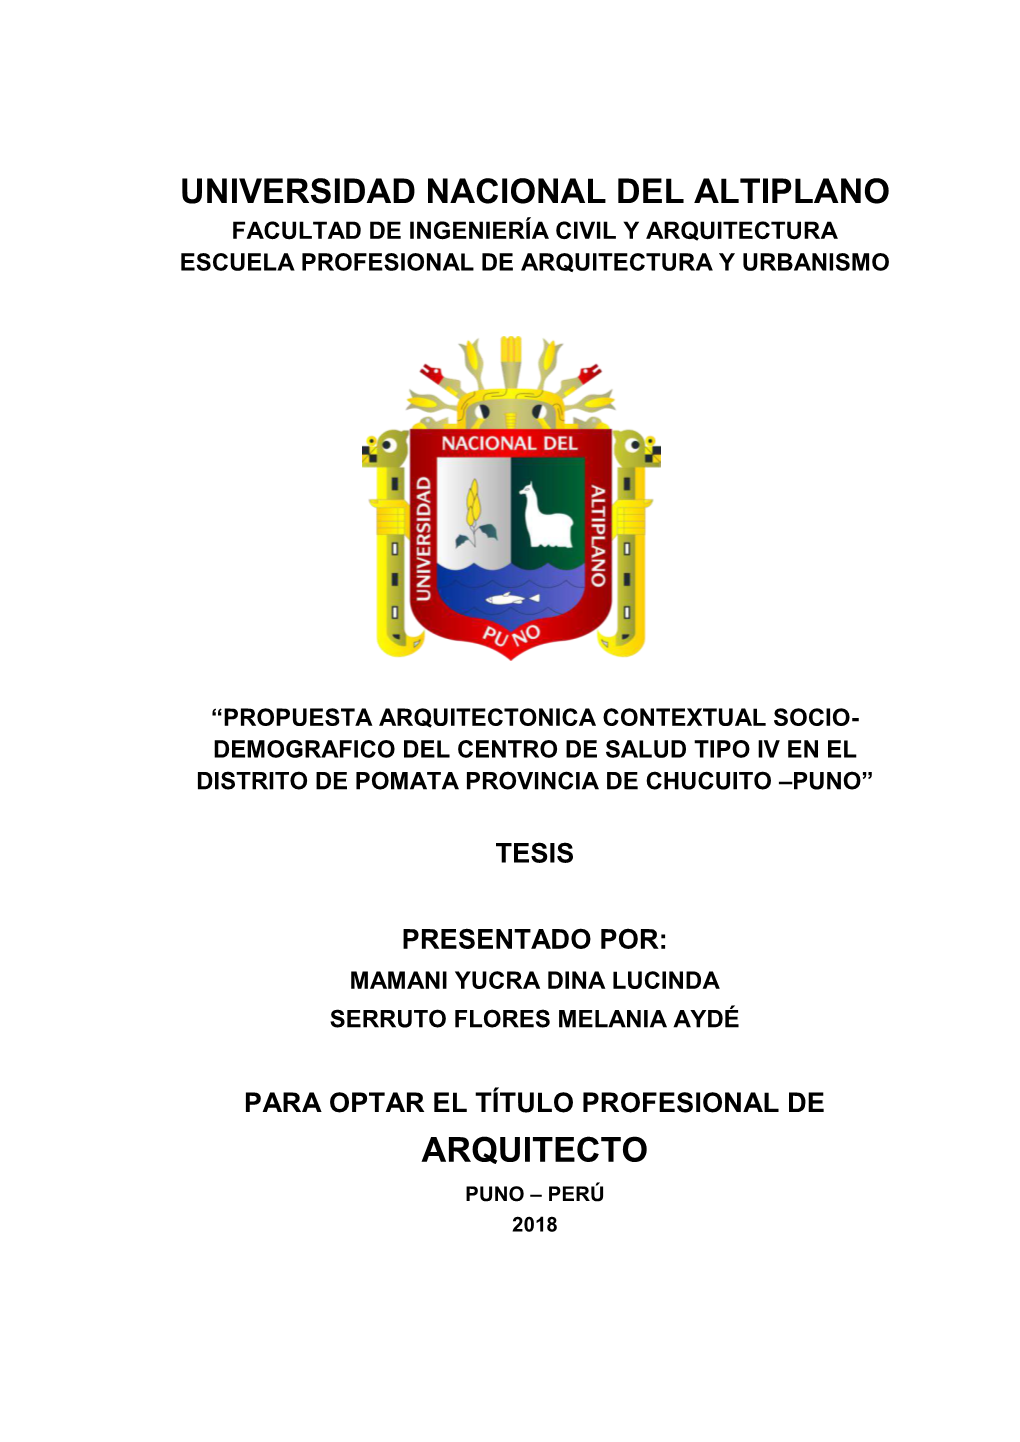 Propuesta Arquitectonica Contextual Socio- Demografico Del Centro De Salud Tipo I-4 En El Distrito De Pomata Provincia De Chucuito –Puno”